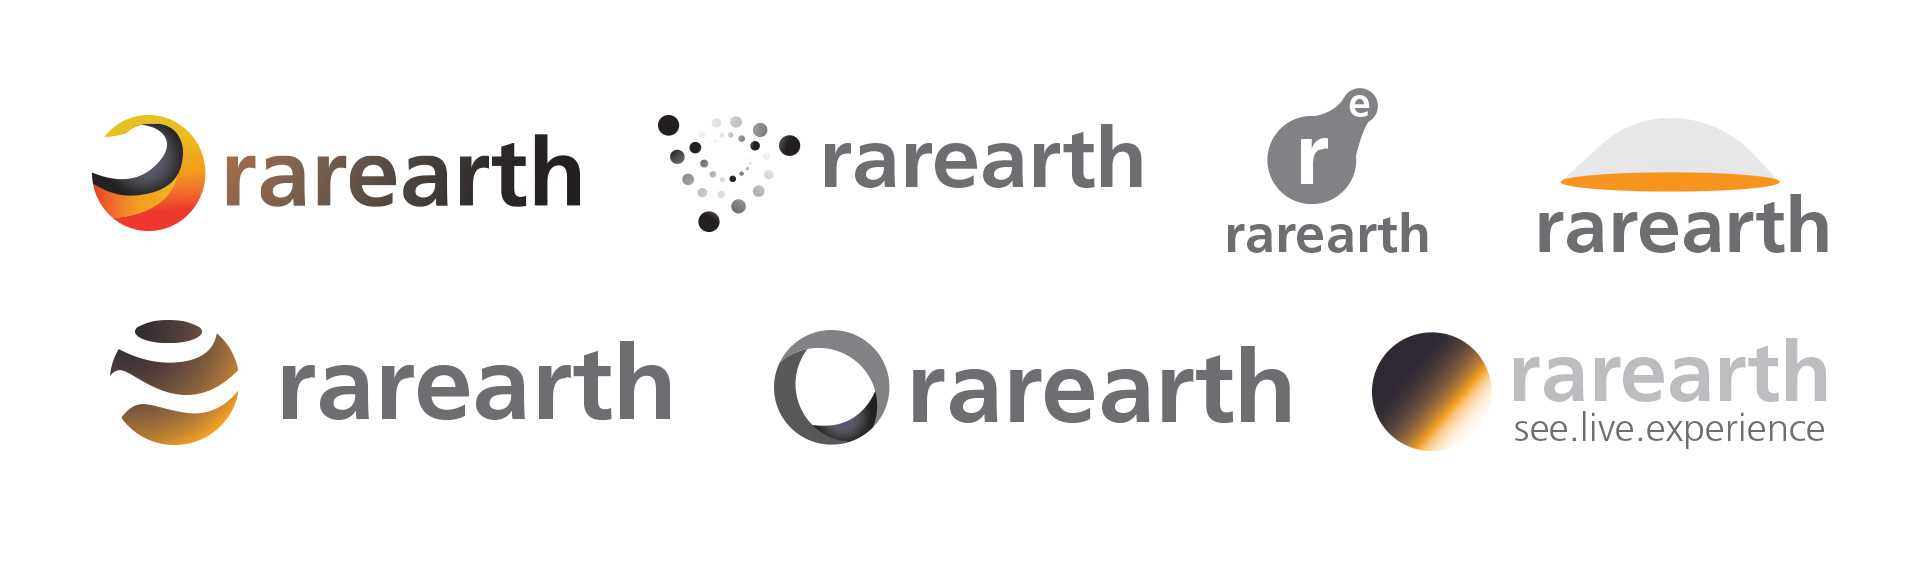 rarearth logo concept sheet